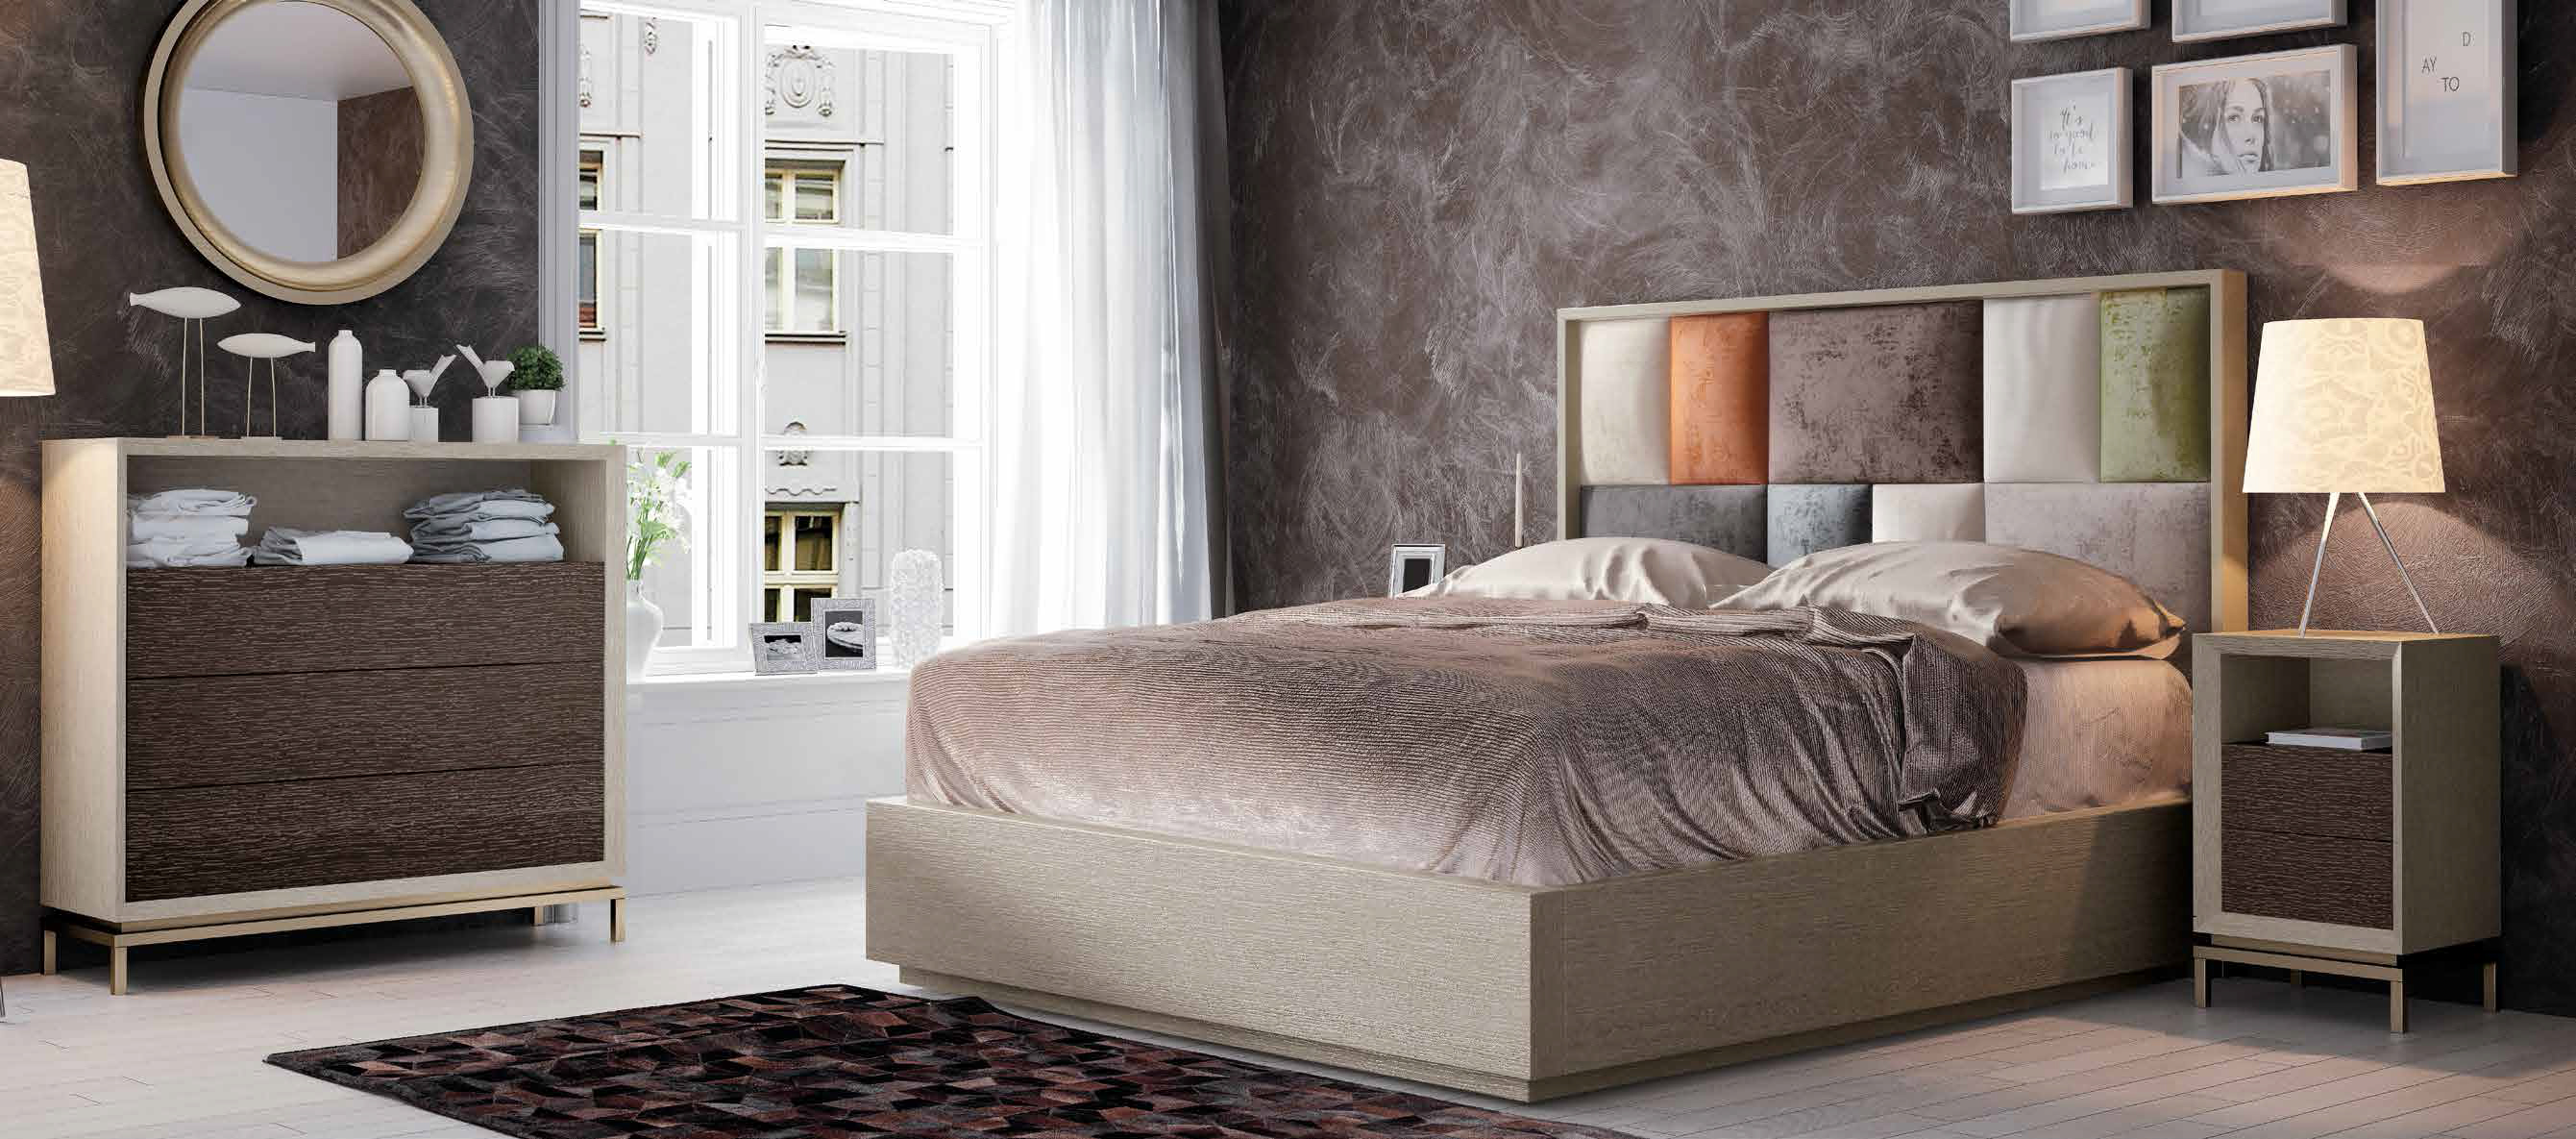 Brands Franco ENZO Bedrooms, Spain DOR 46